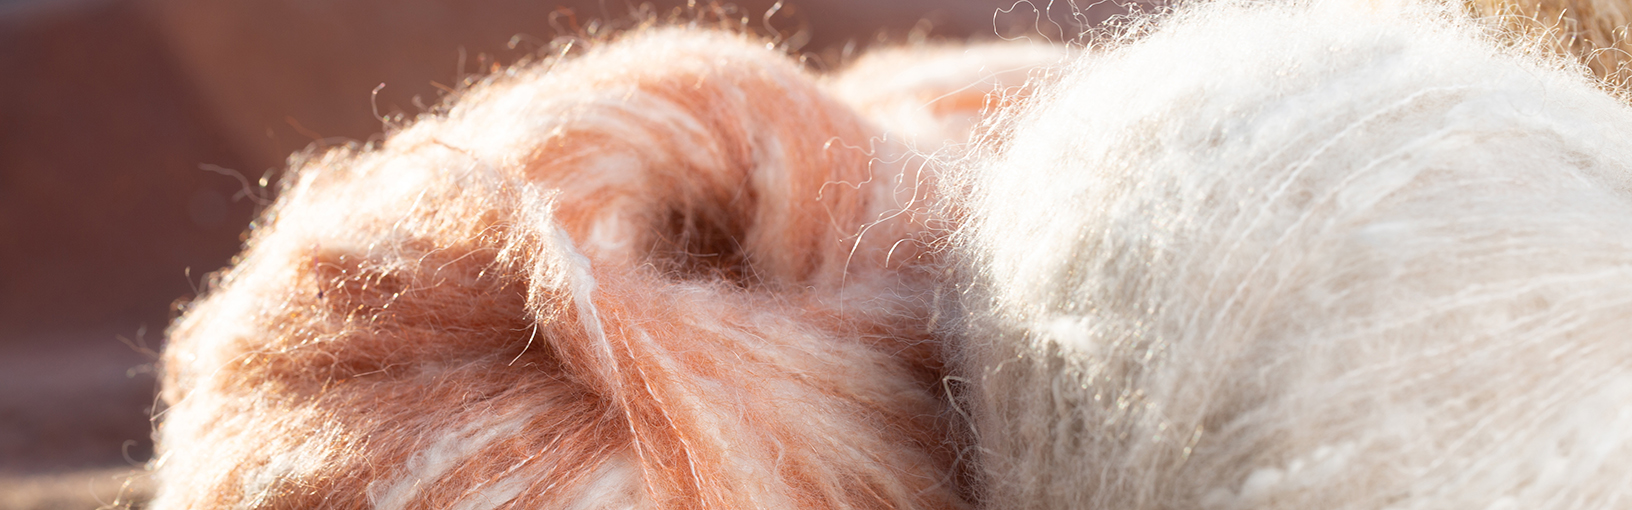 Garn av høy kvalitet til strikking, hekling og toving LANA GROSSA<br> ull & garn | Sokkegarn